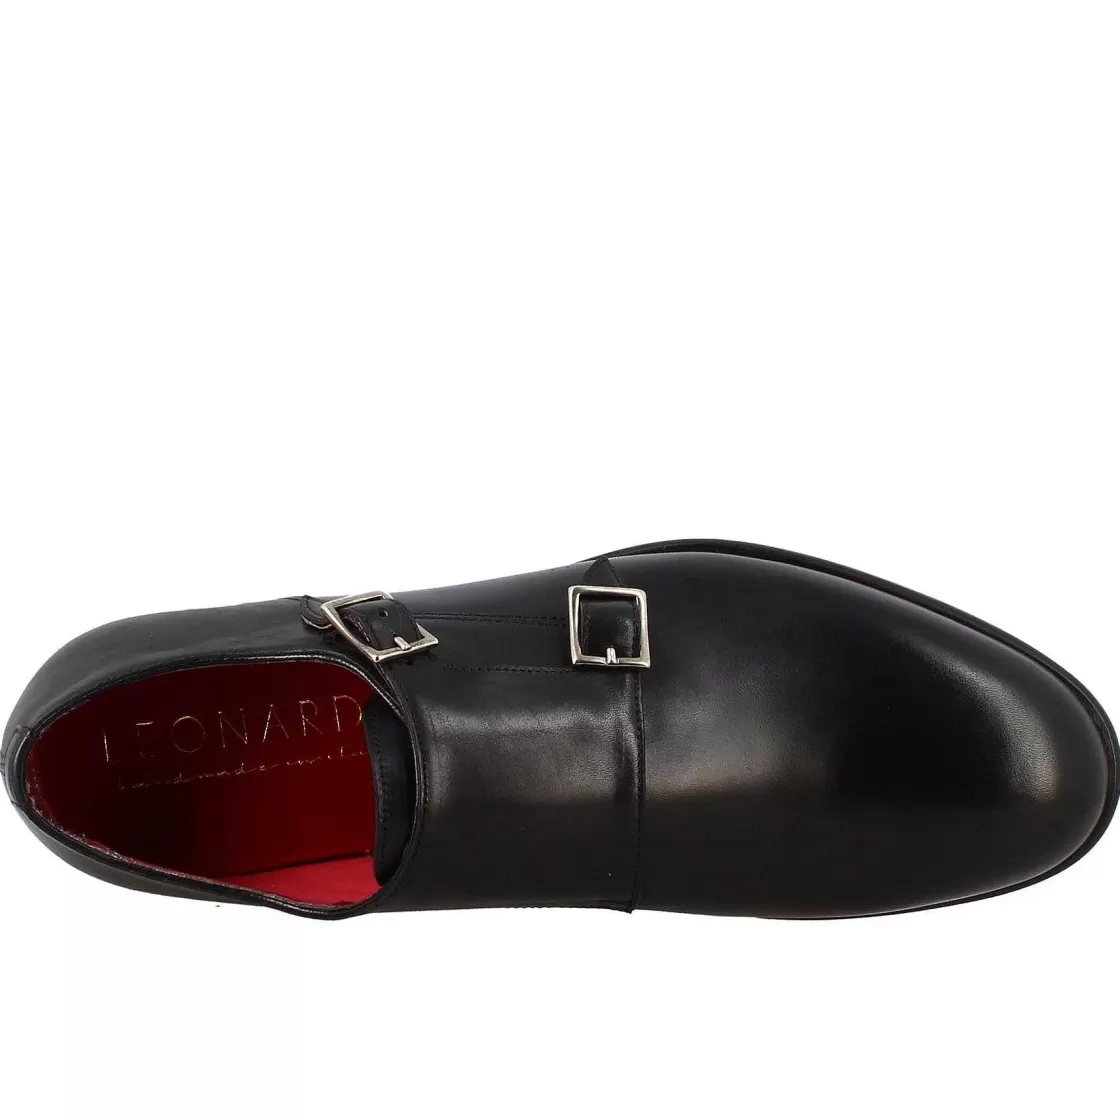 Leonardo Men'S Double Buckle Shoe In Black Leather Best Sale